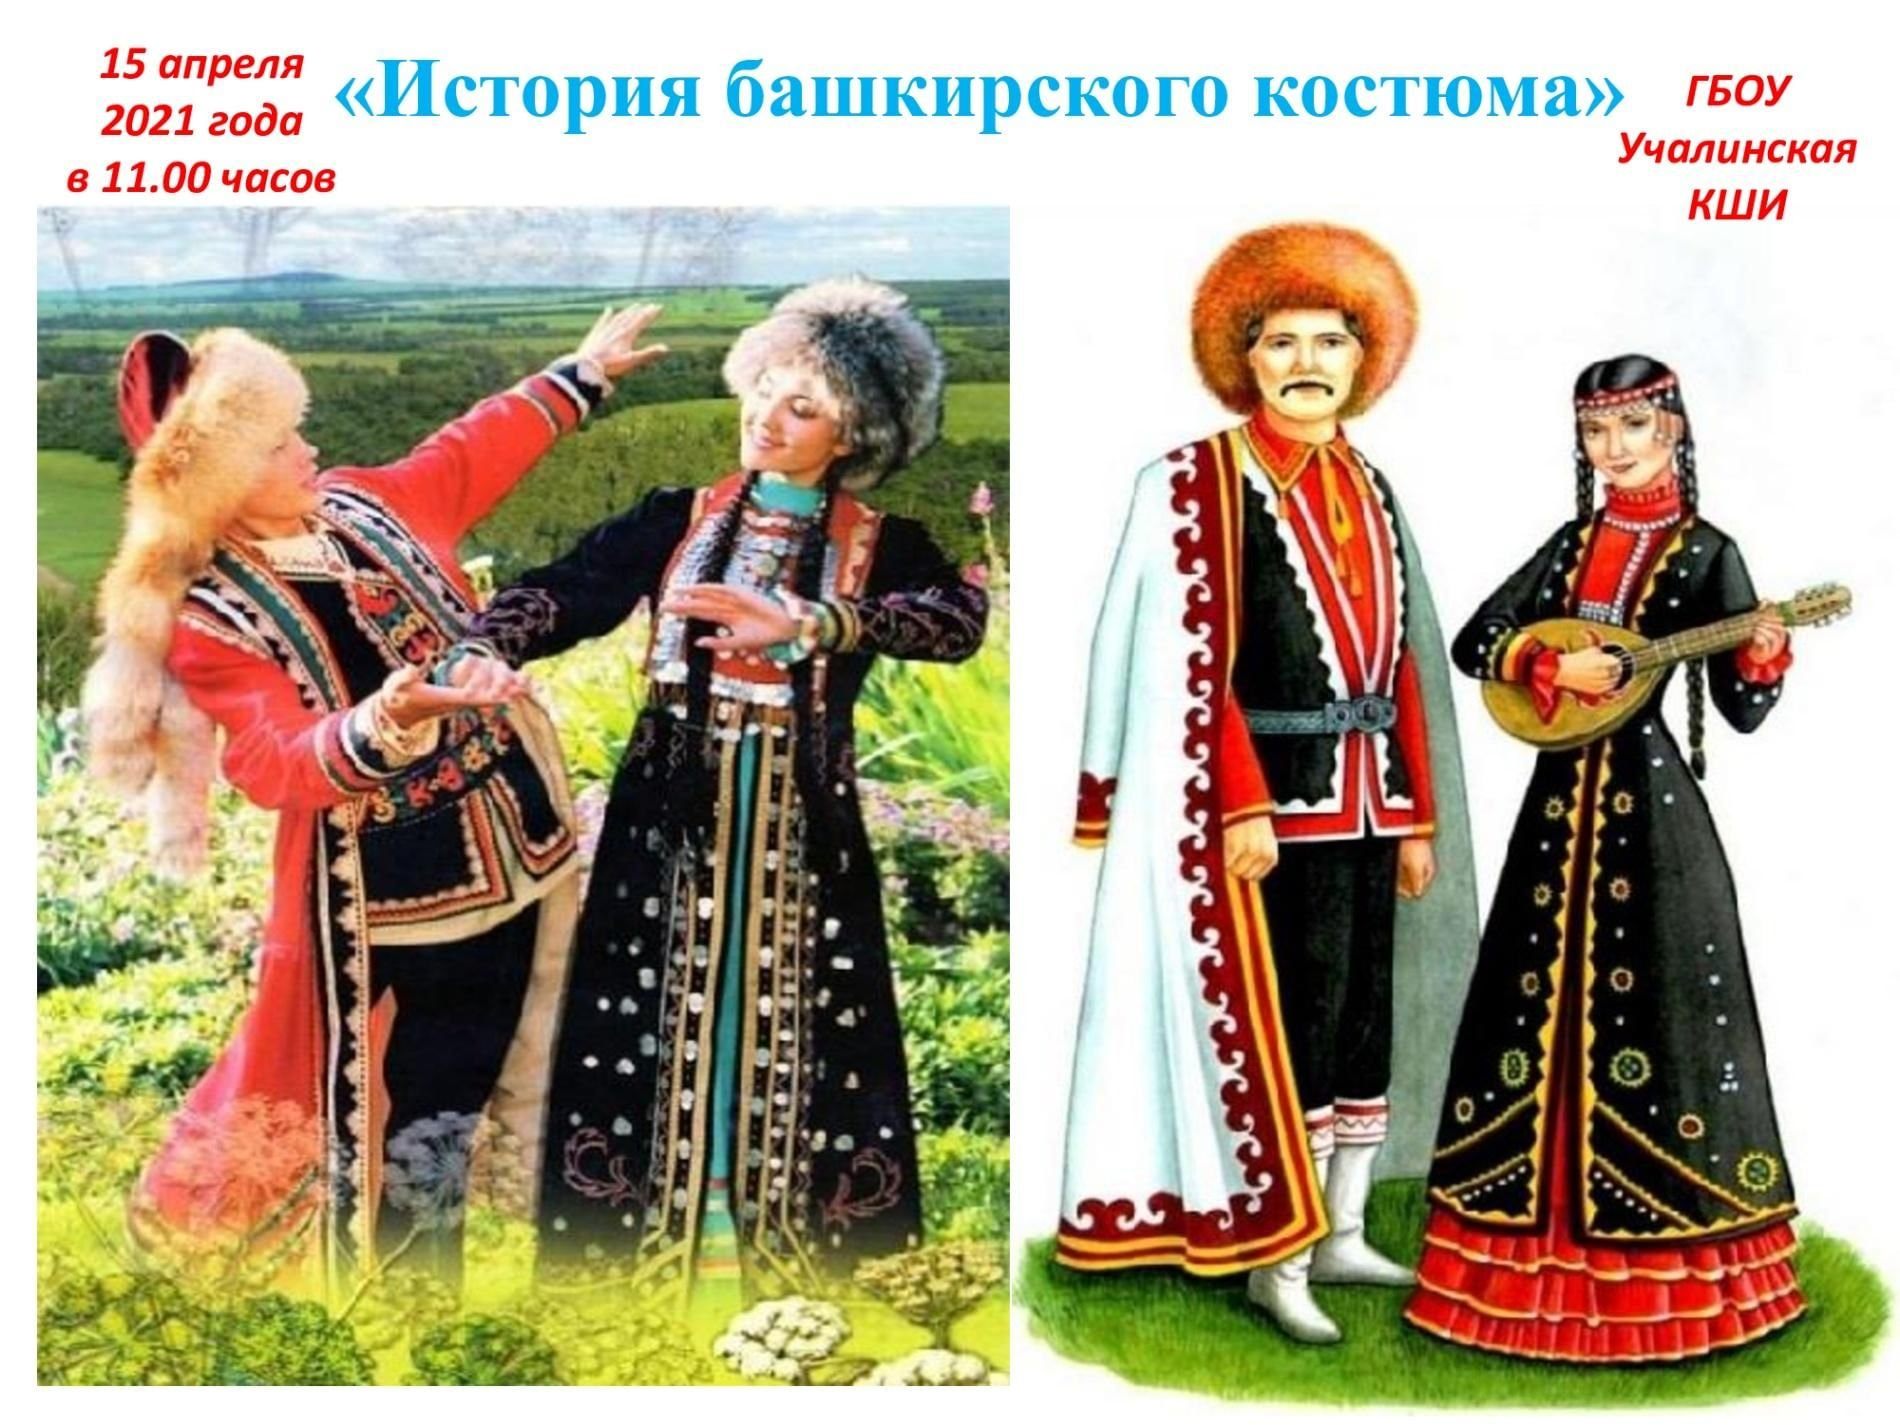 Национальные костюмы Башкиров народов России